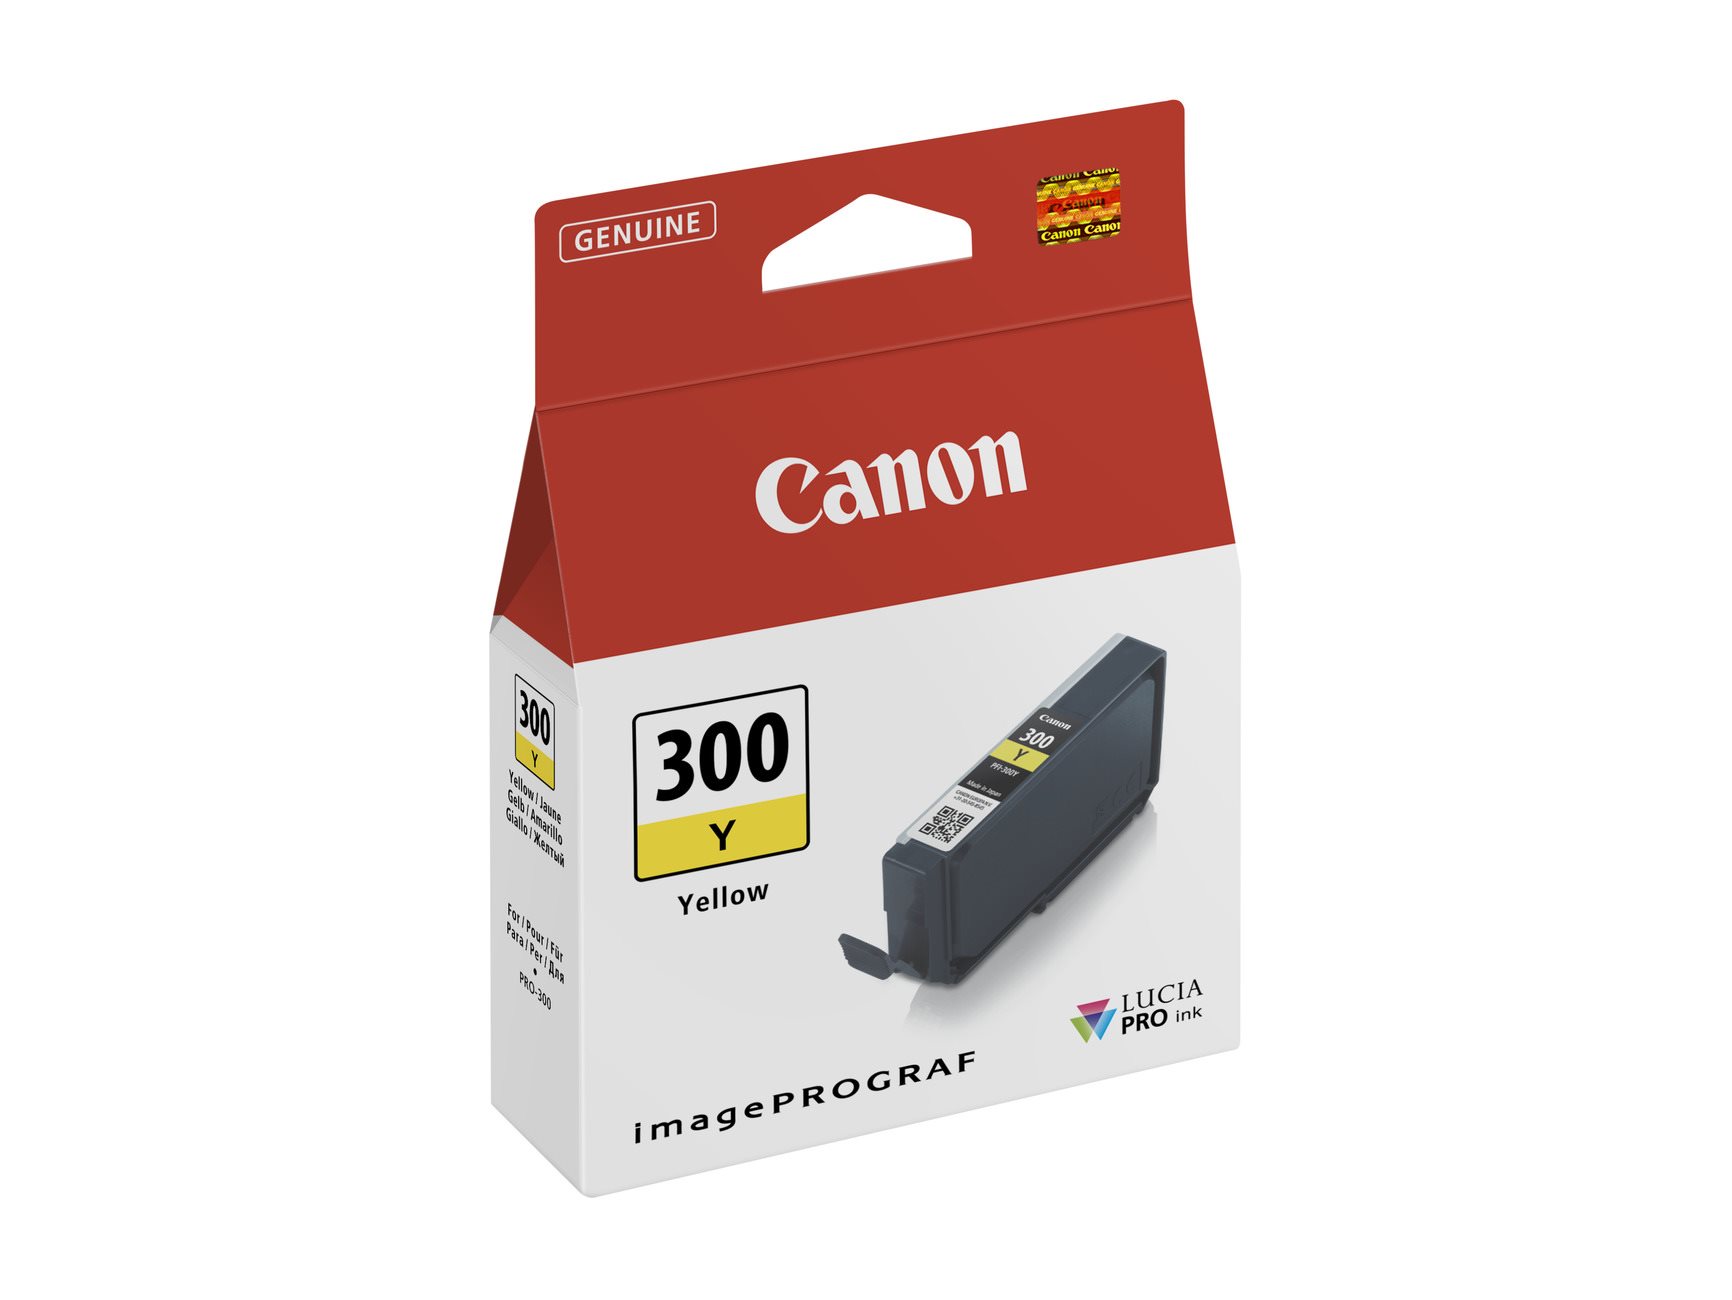 Canon BJ CARTRIDGE PFI-300 Y EUR/ OCN0 